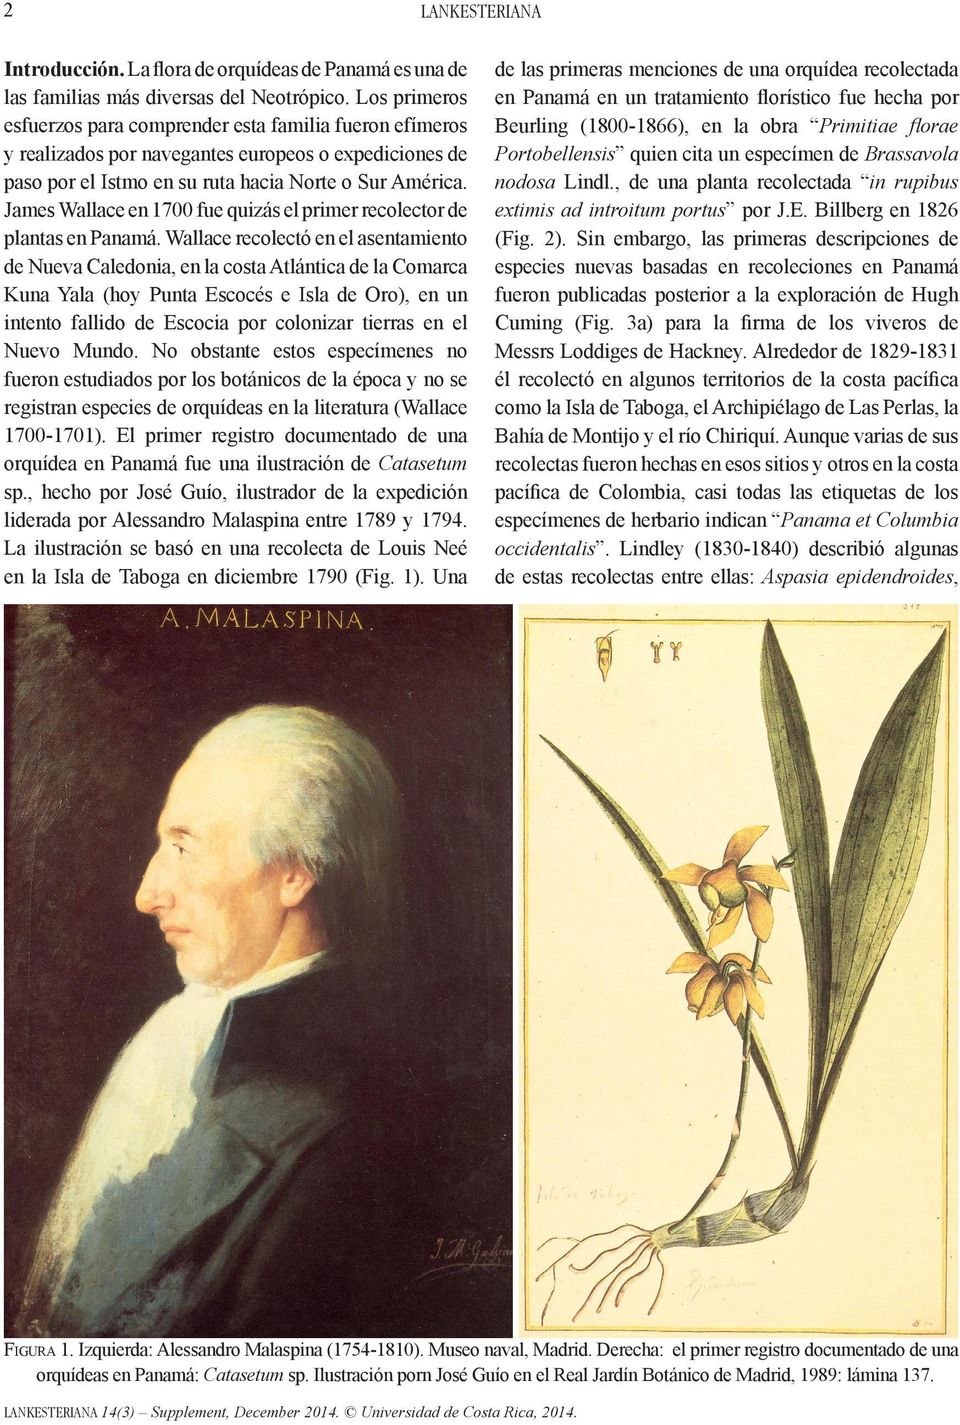 James Wallace en 1700 fue quizás el primer recolector de plantas en Panamá.